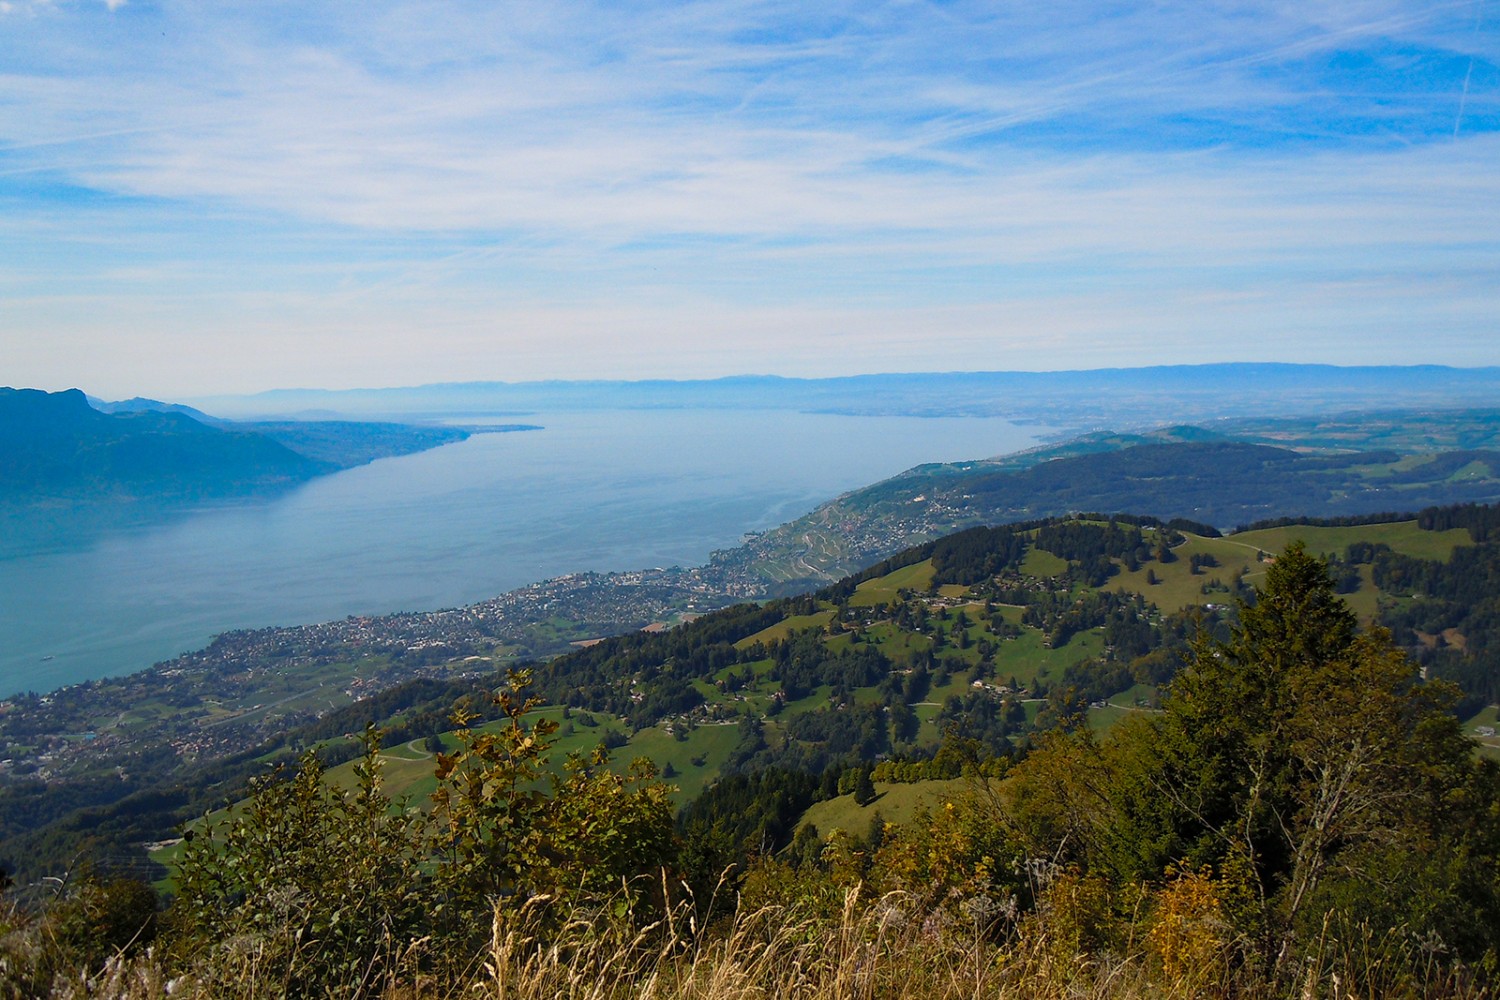 Vom Gipfel von Le Folly hat man eine herrliche Aussicht auf den Genfersee.
Bild: Marcel Fragnière